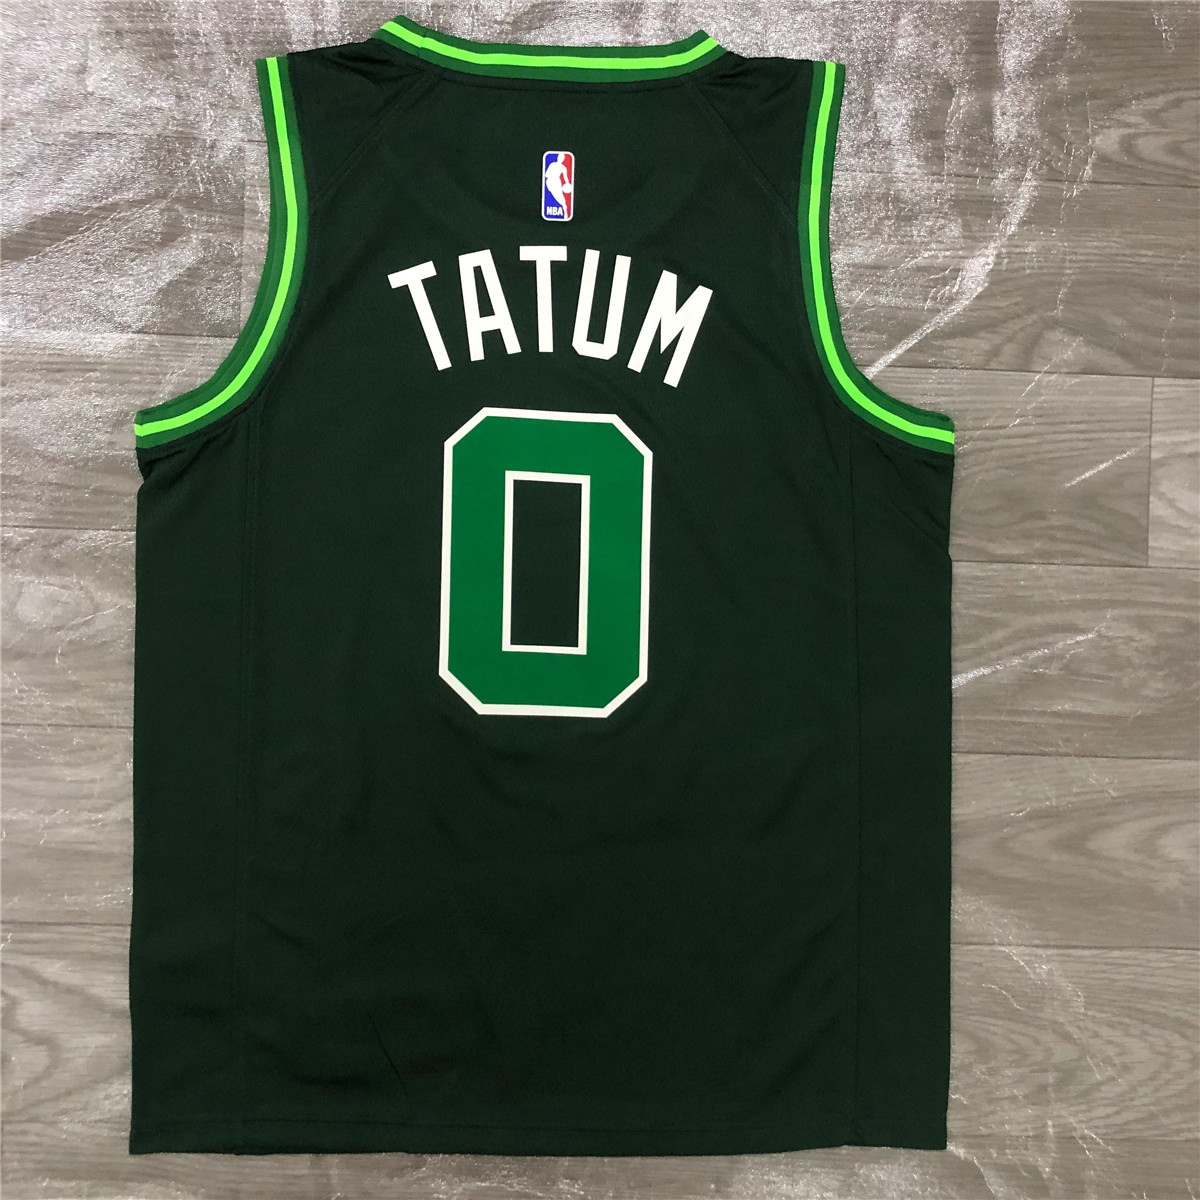 2021 Boston Celtics Green Swingman Jersey Earned Edition Mens